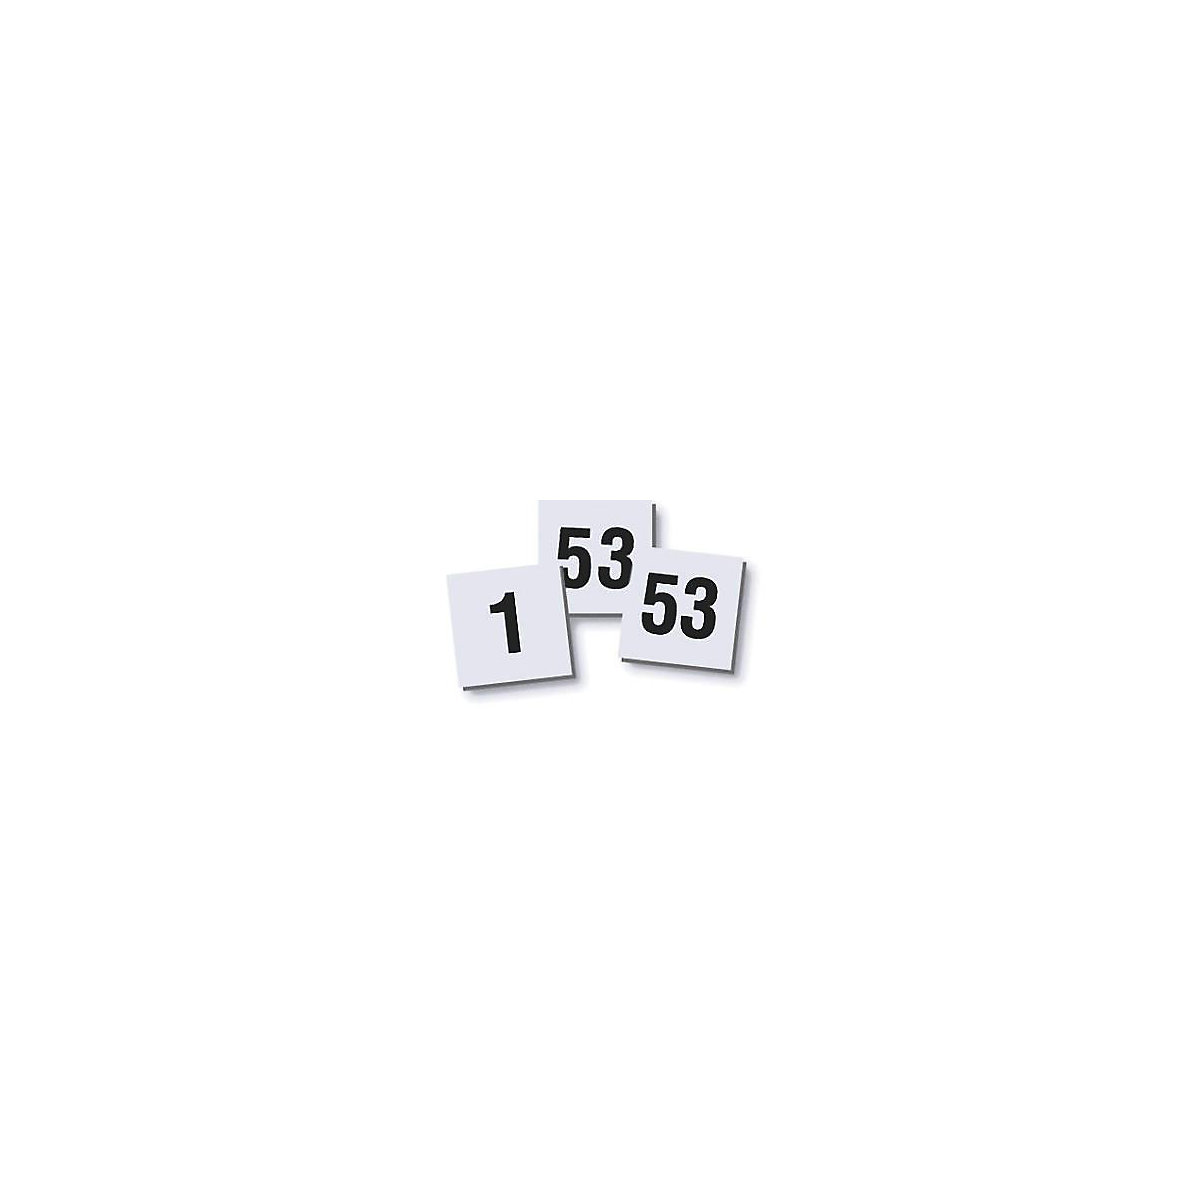 Digit magnet set – magnetoplan, 10 x 10 mm, pack of 2, digits 1 – 53-3